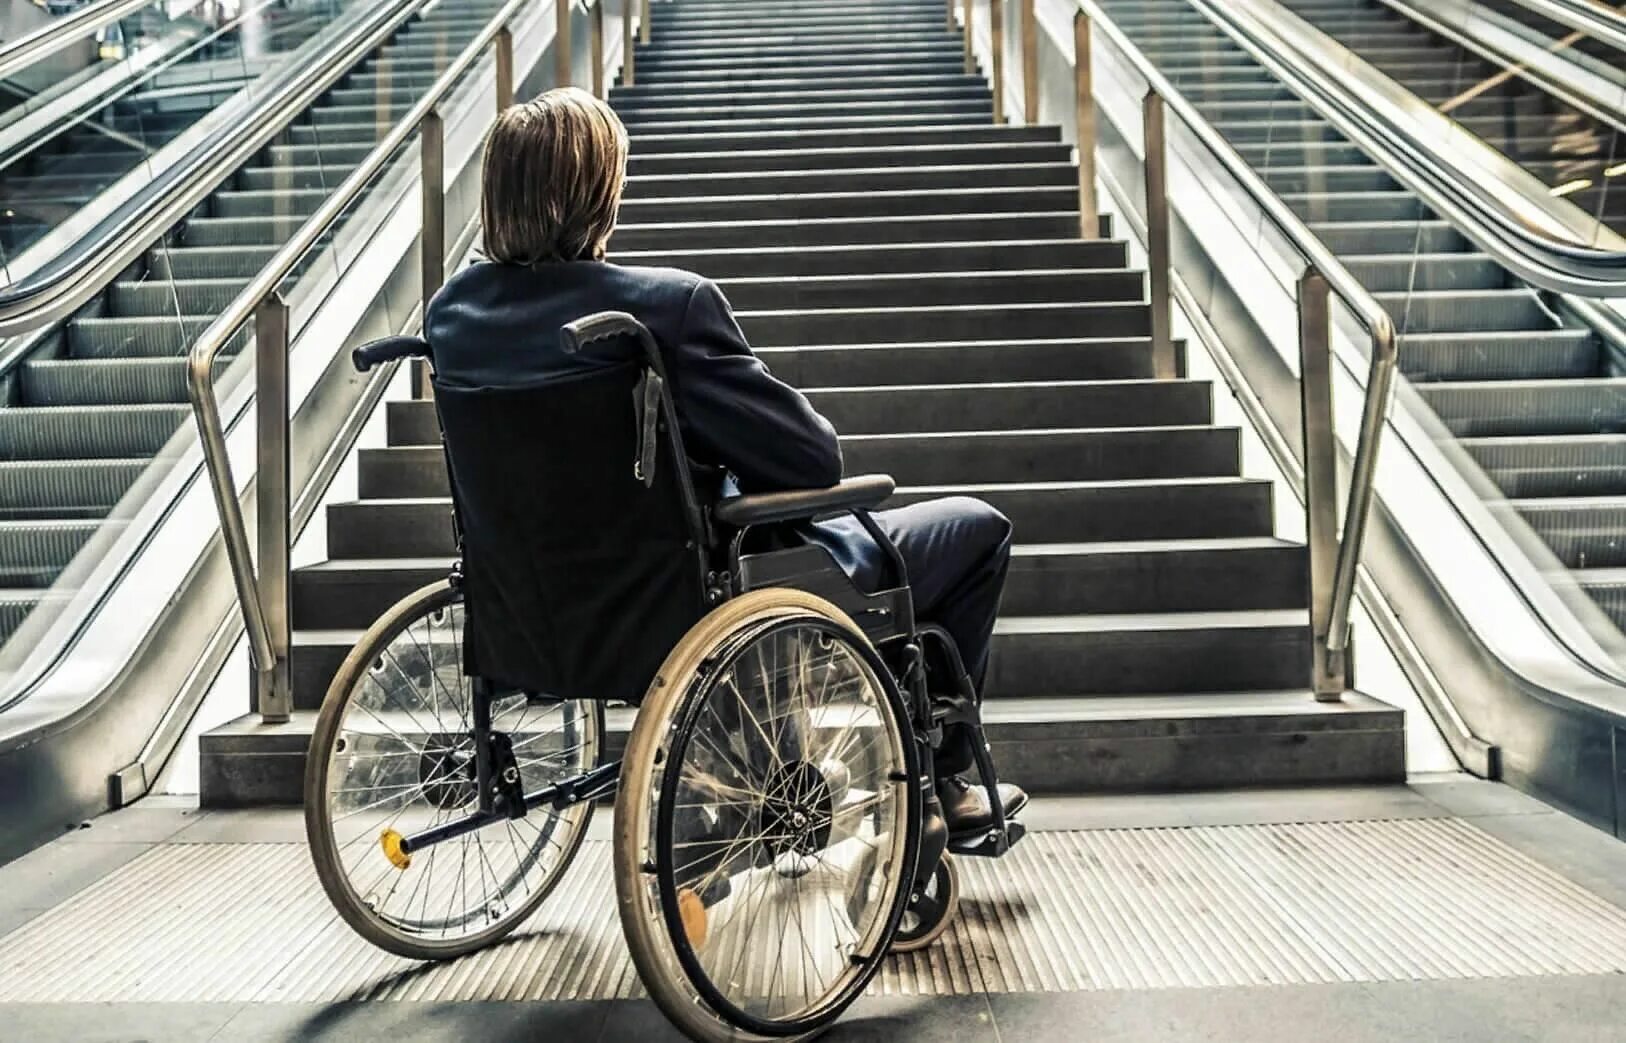 Понять доступный. Люди с ограниченными возможностями. Люди сограничеными возможностями. Люди с инвалидностью. Инвалиды люди с ограниченными возможностями.